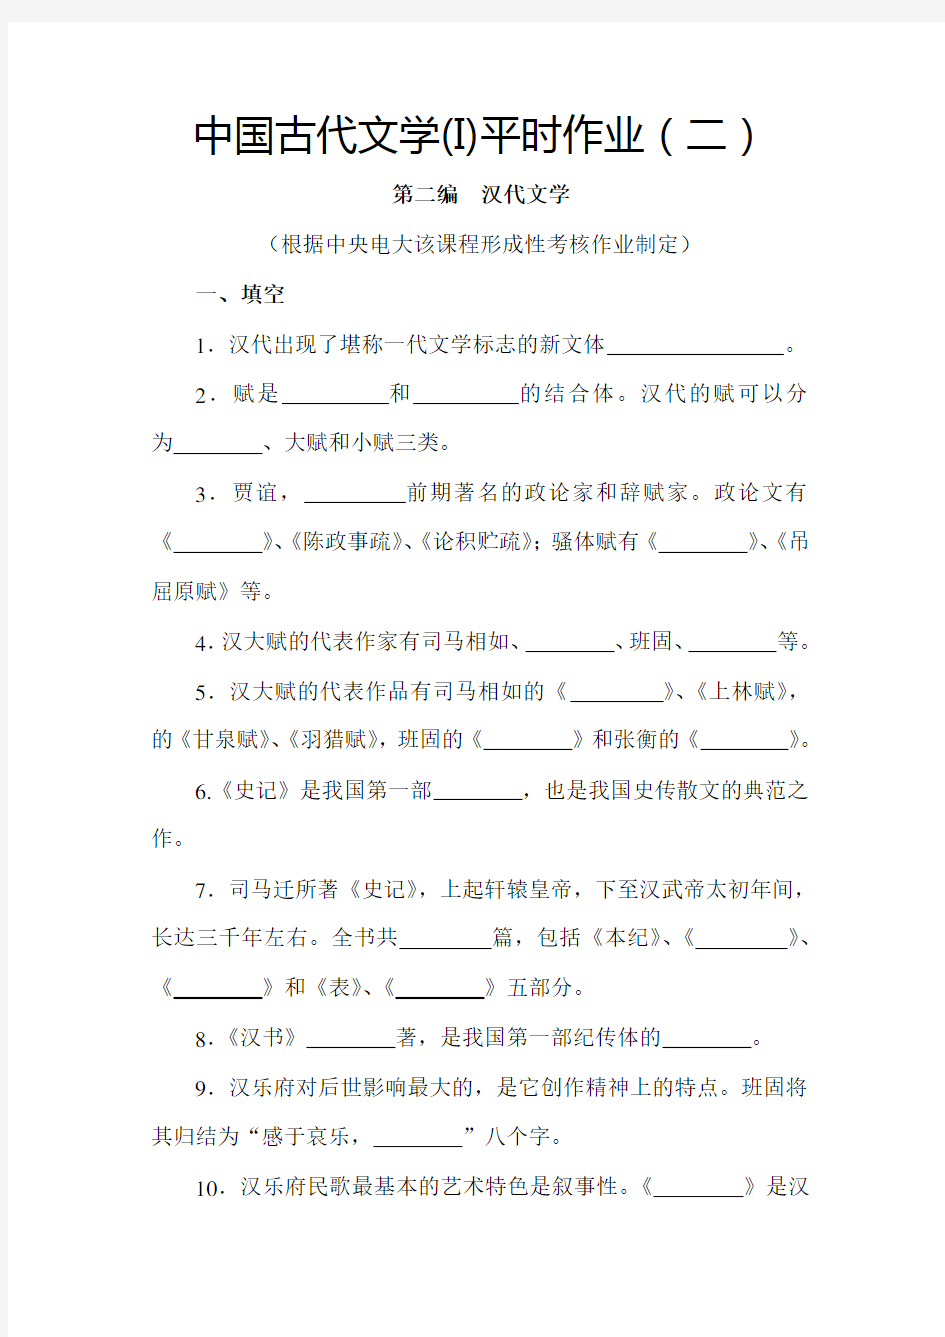 中国古代文学(I)平时作业(二)